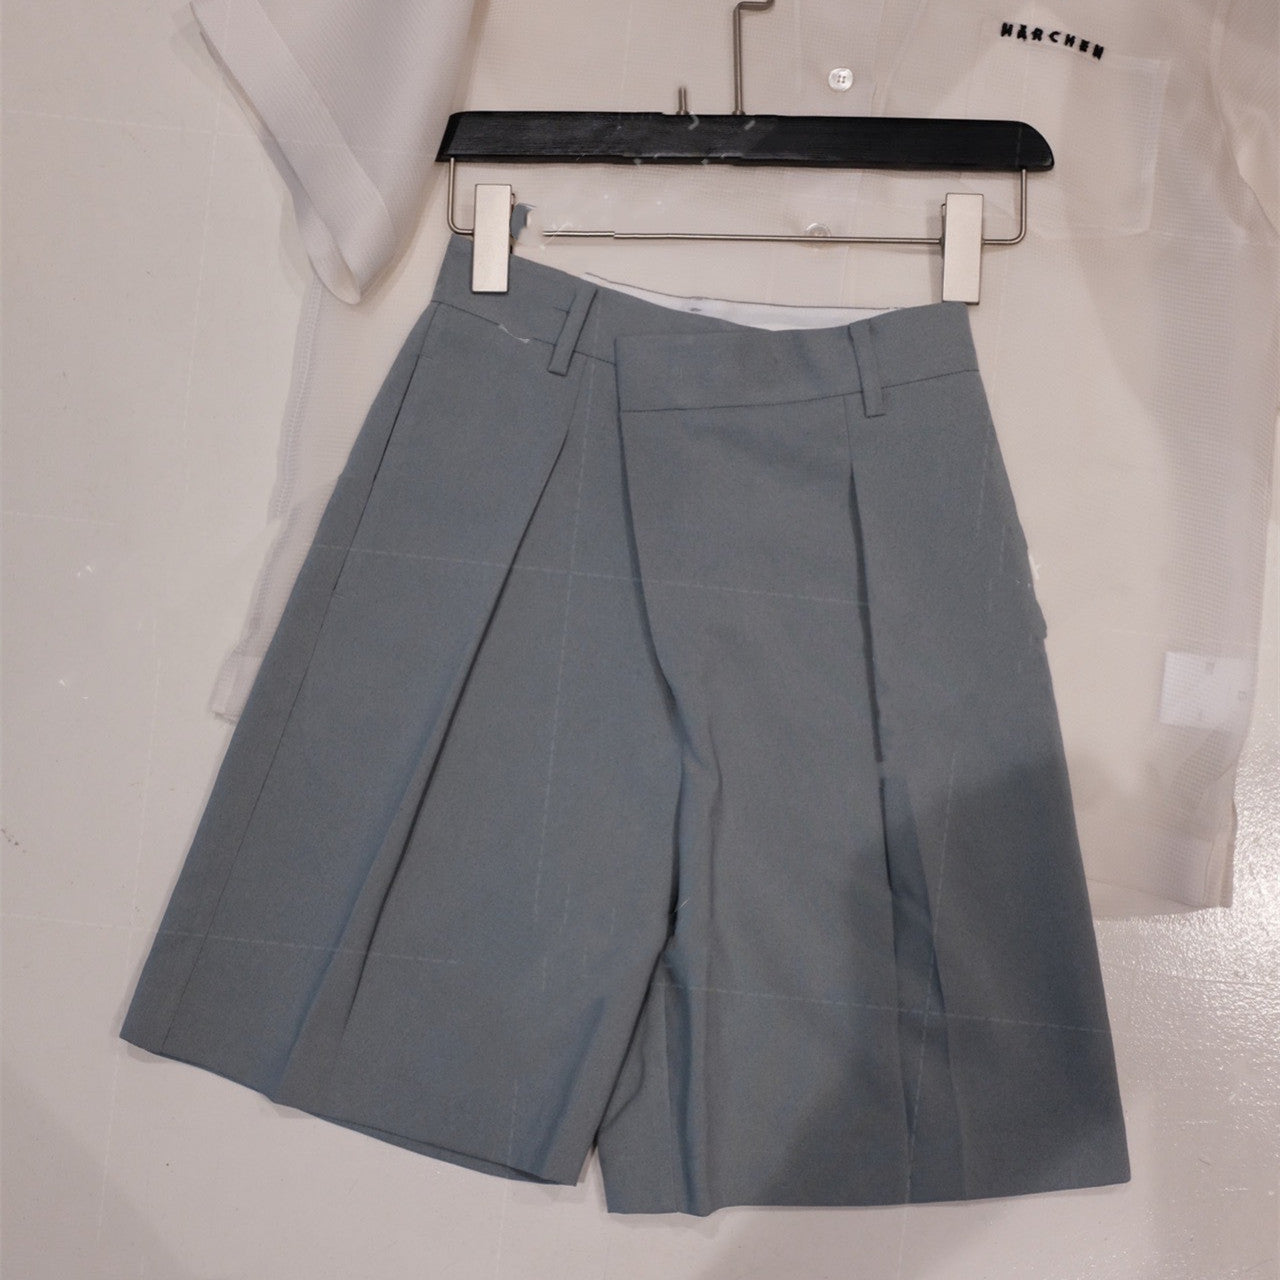 Bermuda Shorts Suit Diagonal Placket Shorts Shorts